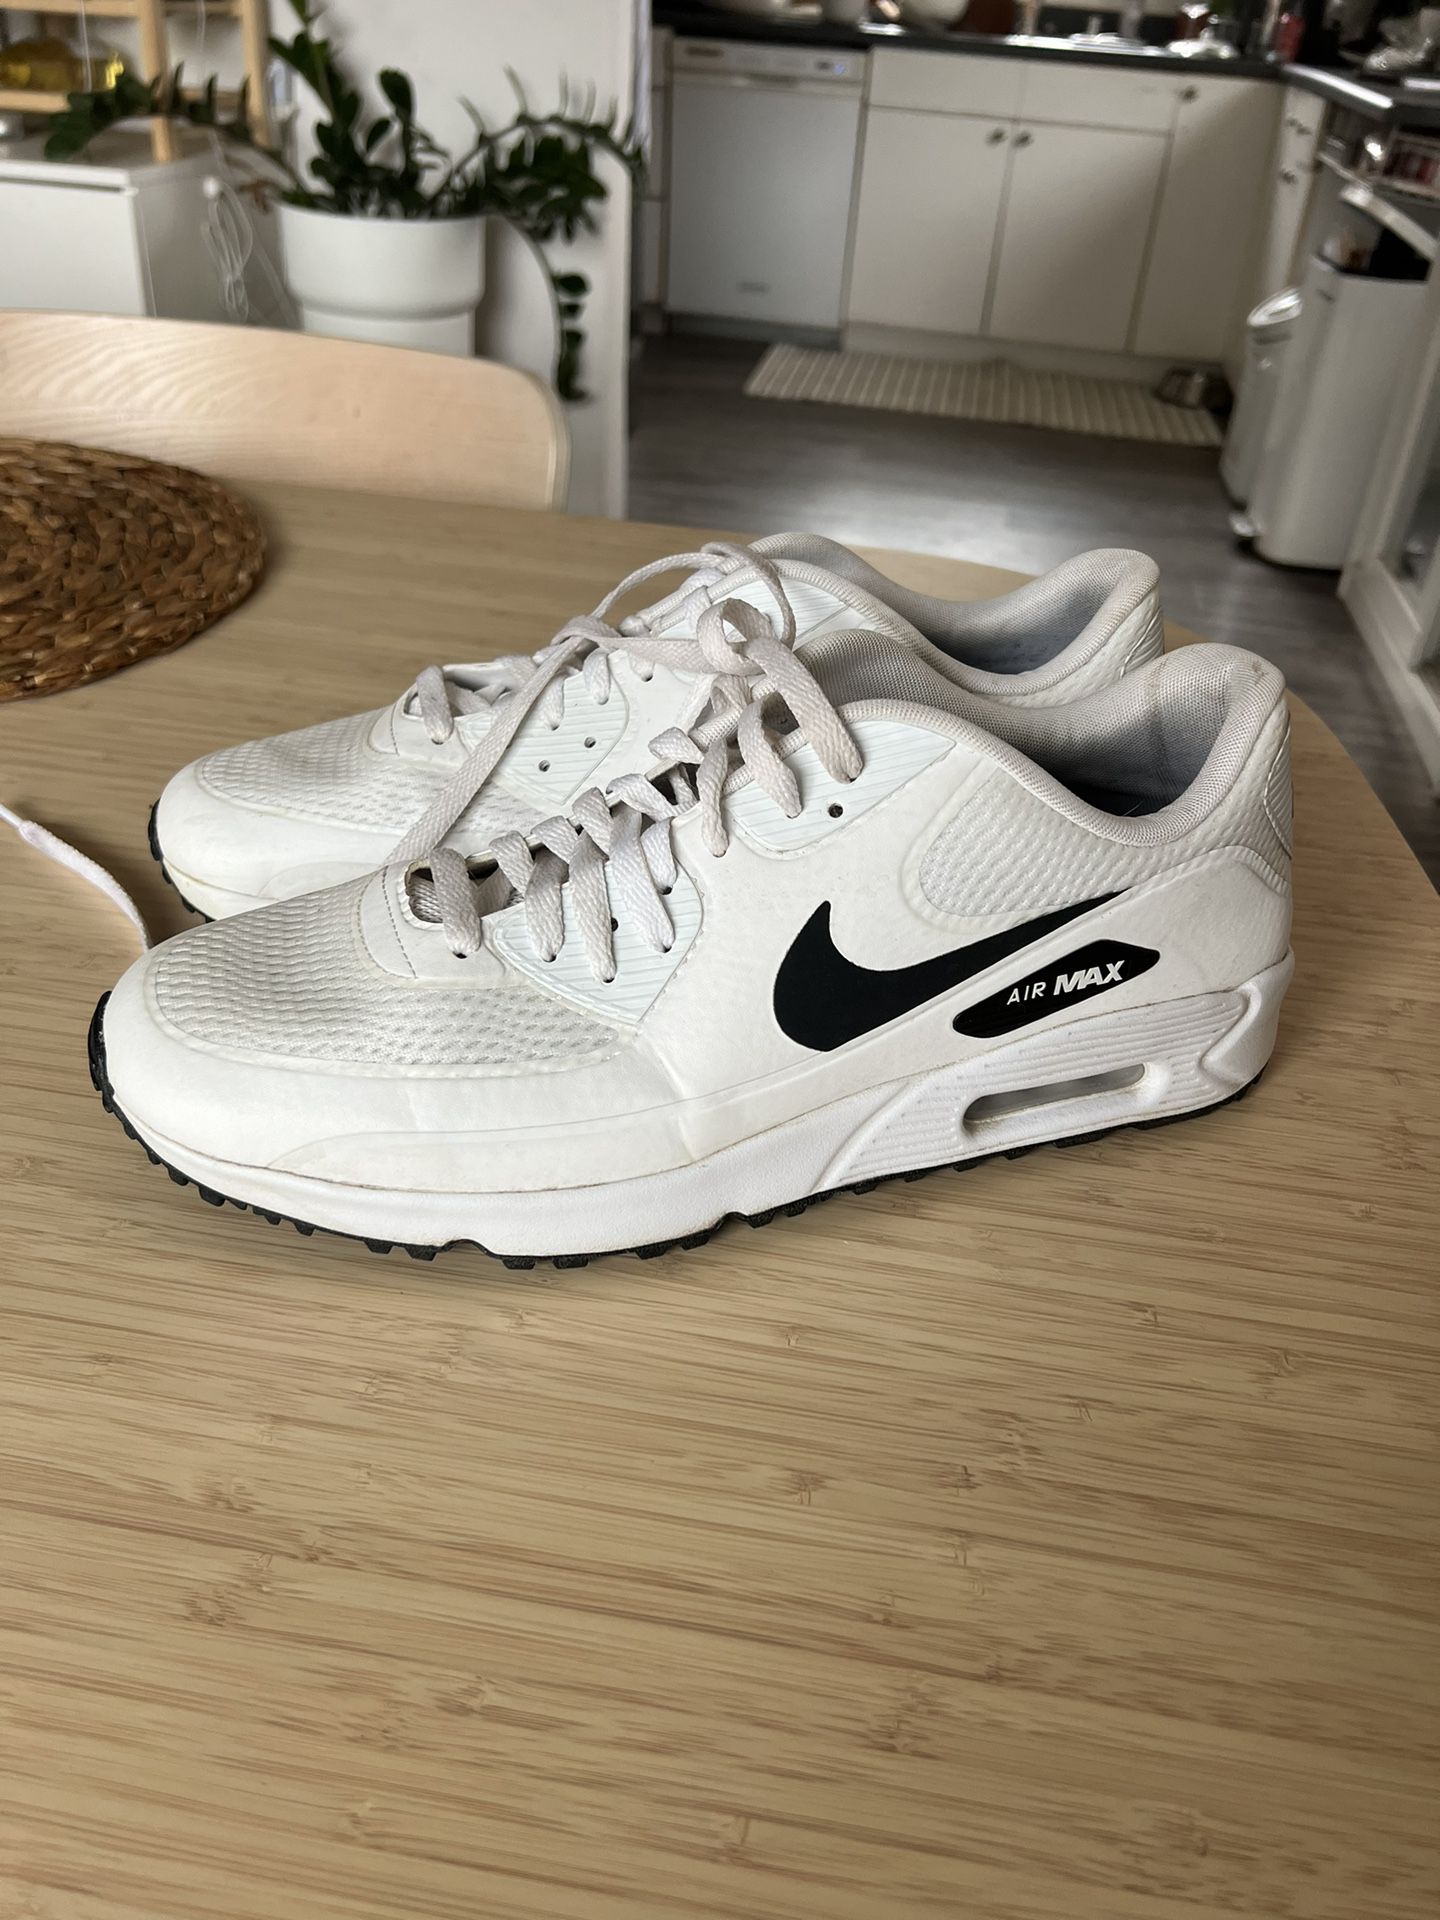 Nike Air Max 90 Golf Shoes